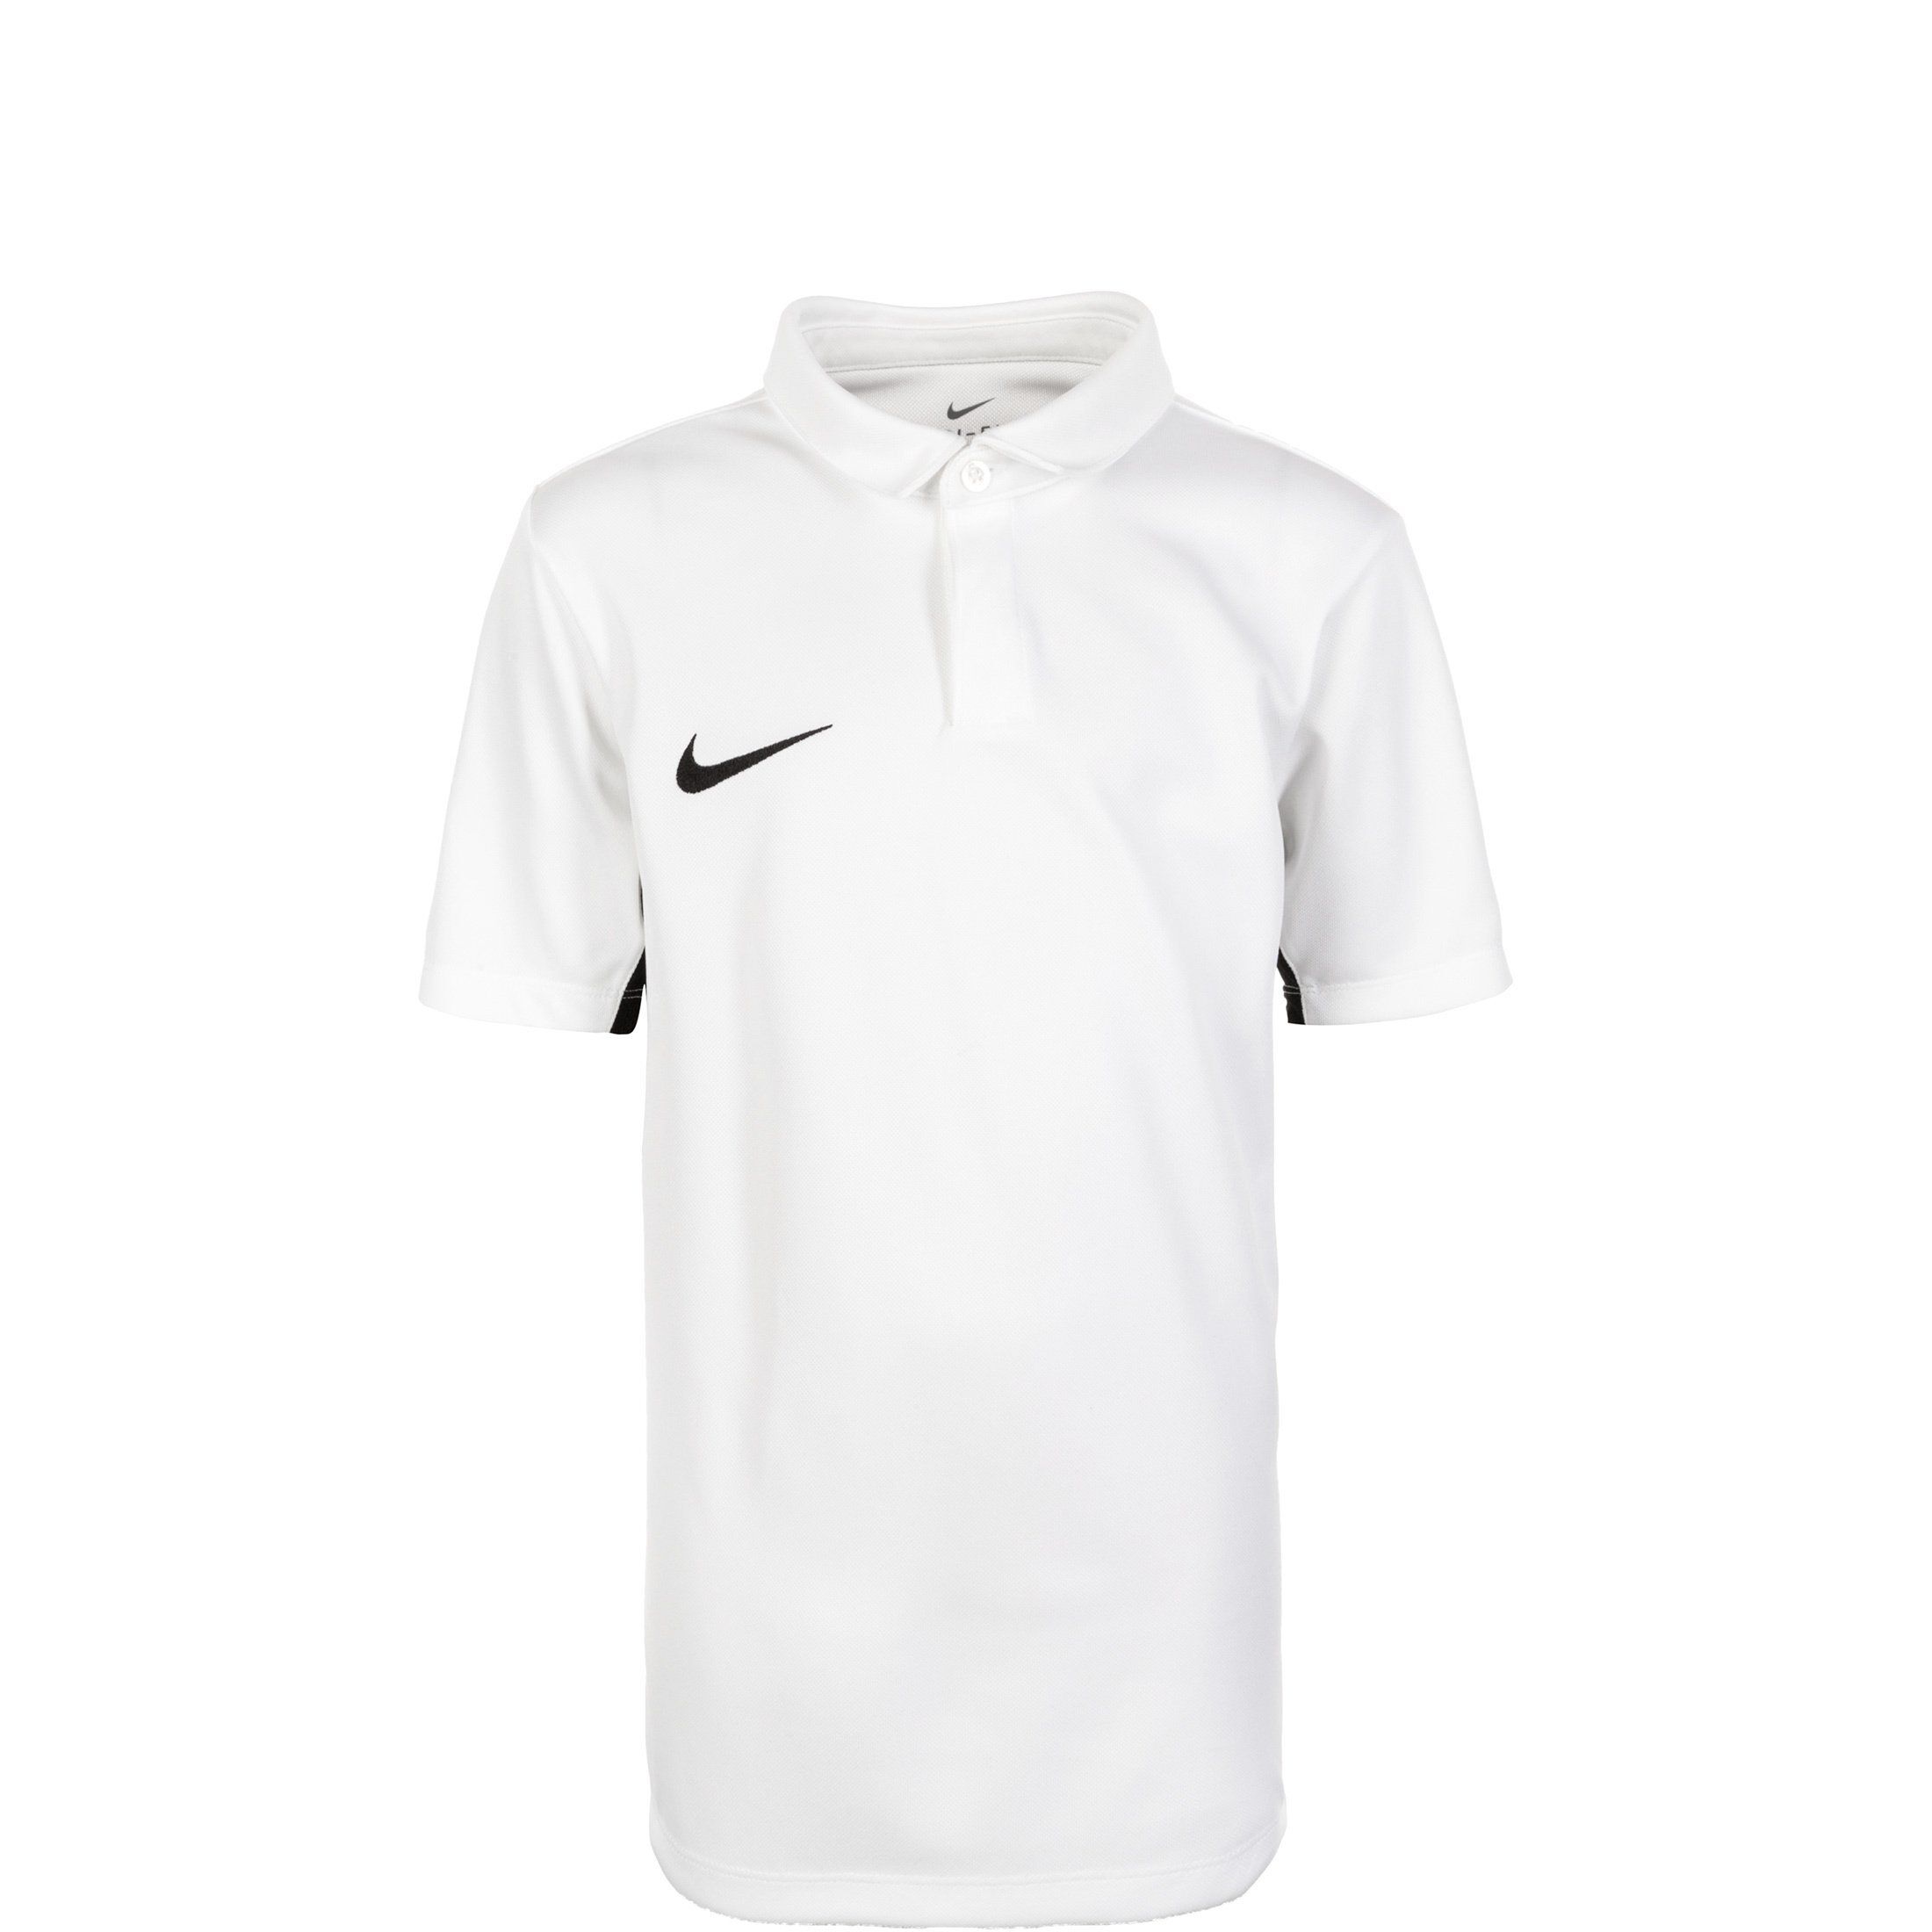 Nike Poloshirt »Dry Academy 18«, weiß